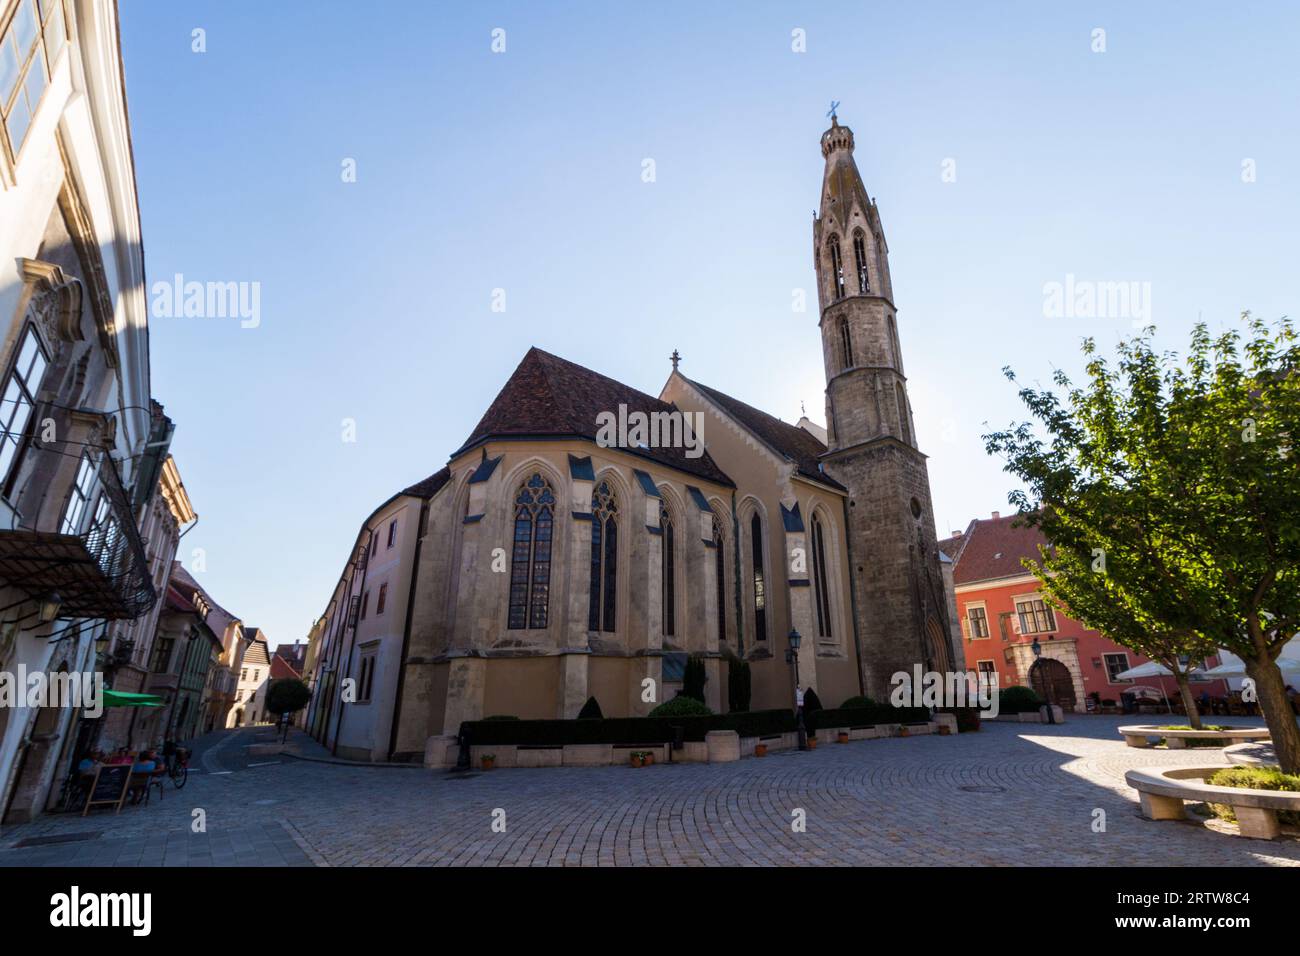 FO ter (place principale) avec église bénédictine de la Bienheureuse Marie (14e siècle) rétro-éclairée, Sopron, Hongrie Banque D'Images